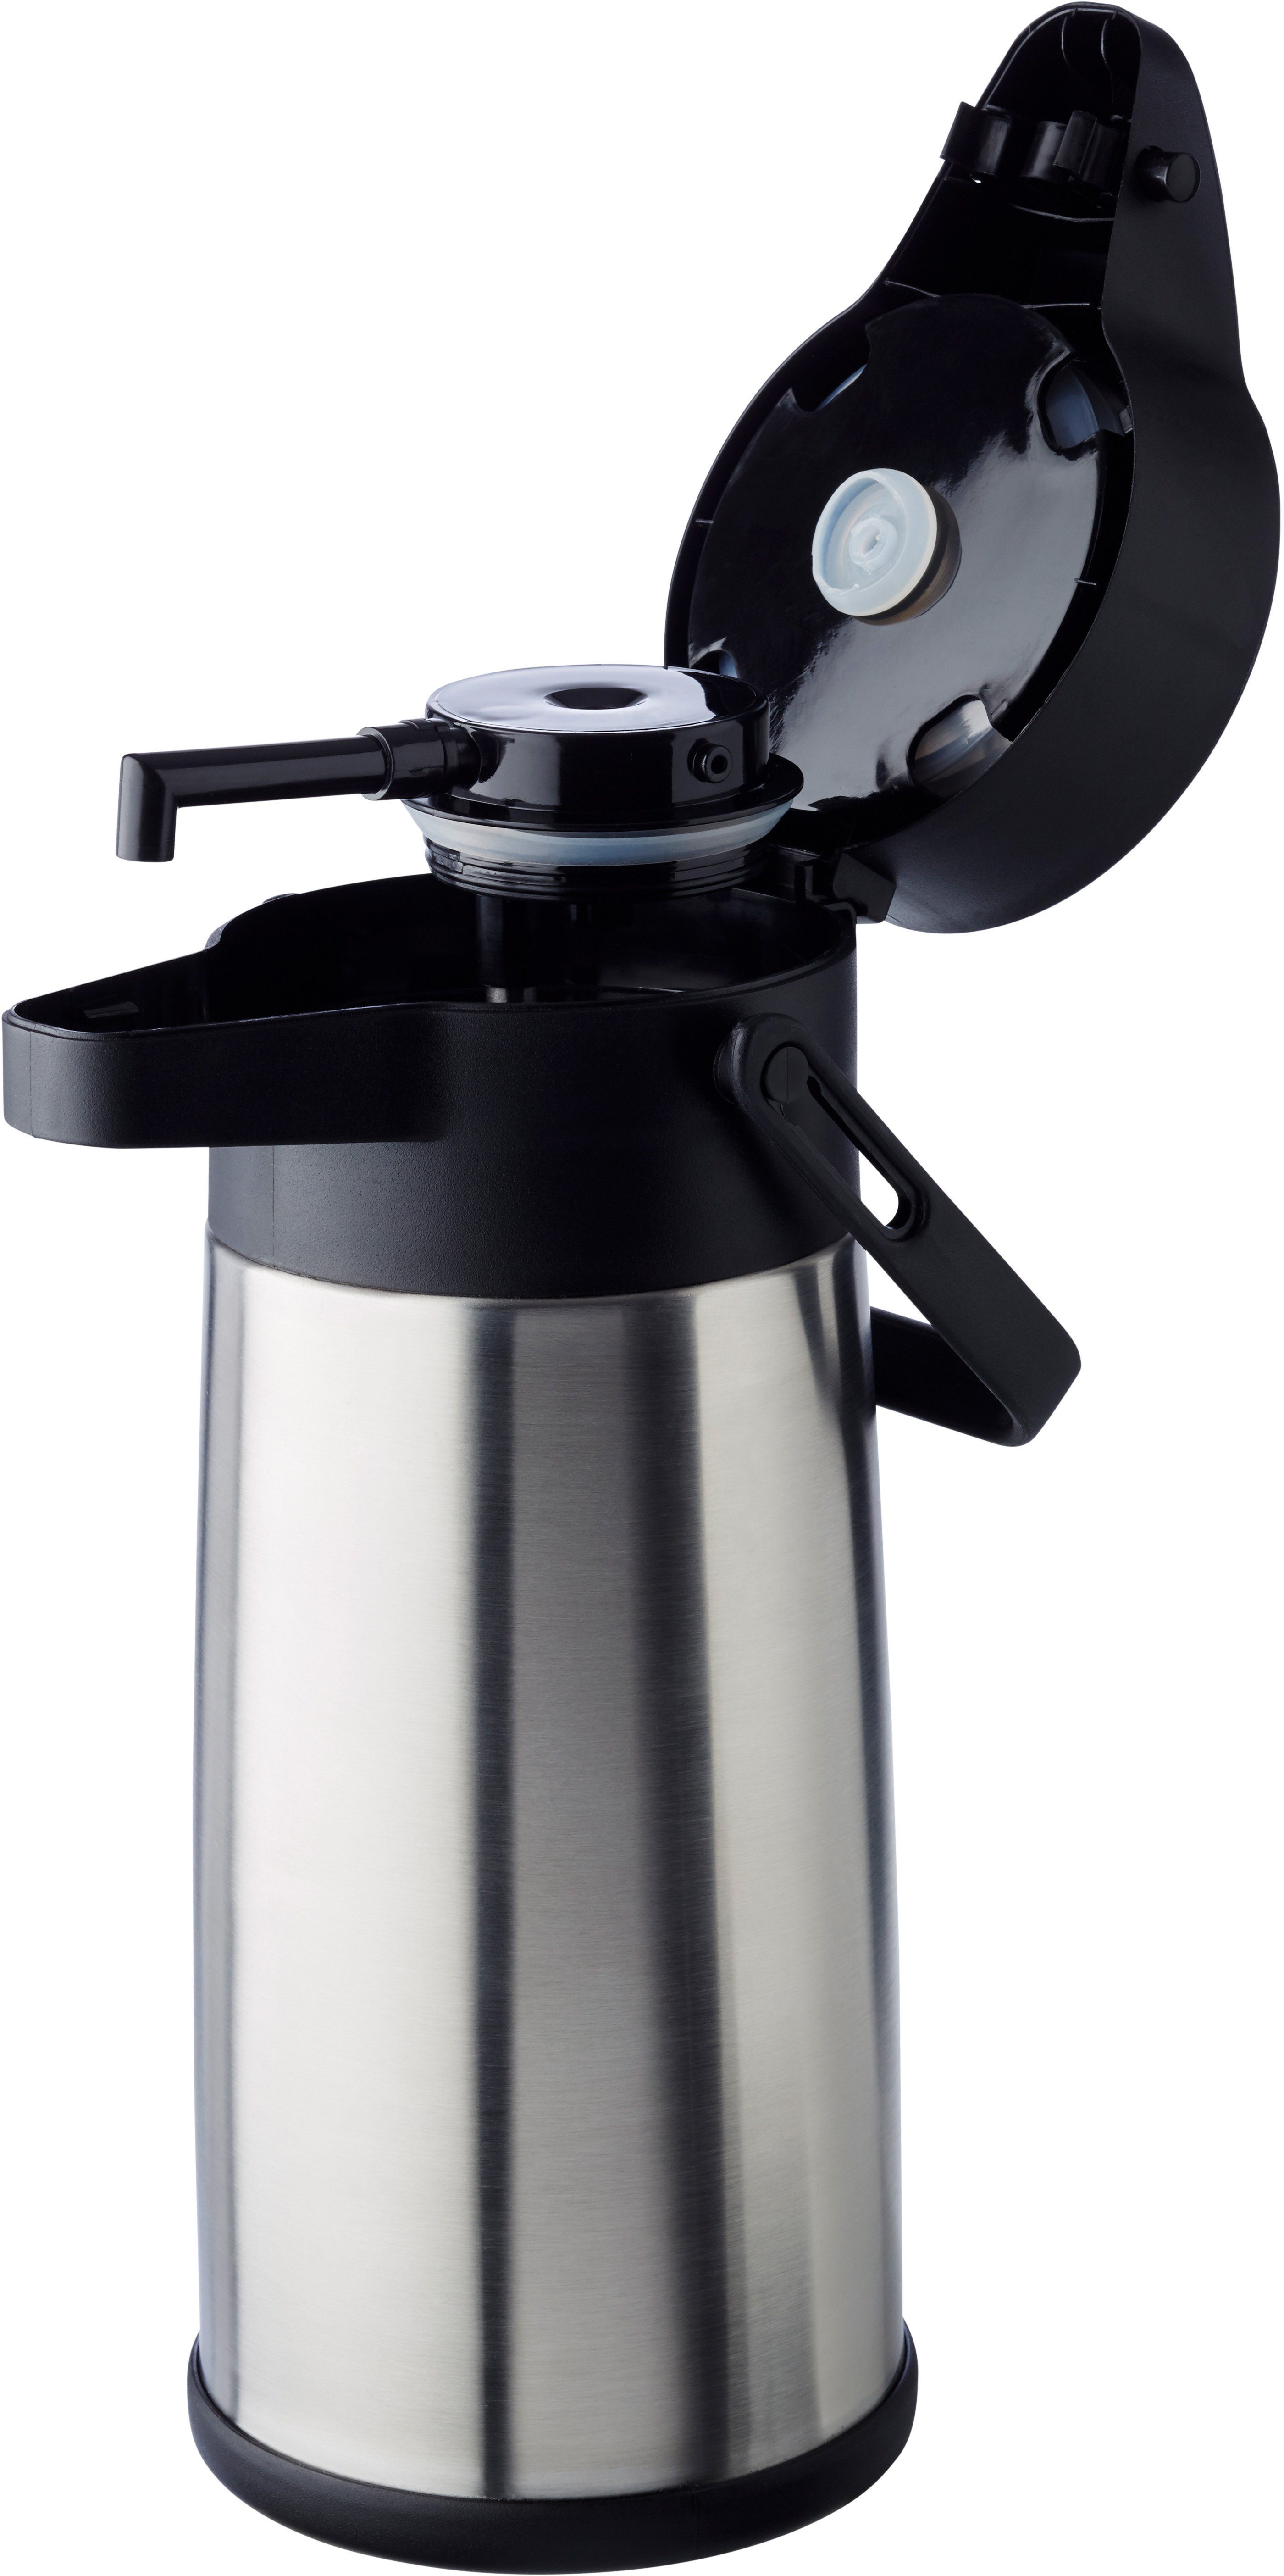 APS Pump-Isolierkanne Budget, 17 2,2 zu bis Isolierung Kaffee, l, Dreh-Pumpknopf, für Tassen doppelwandige